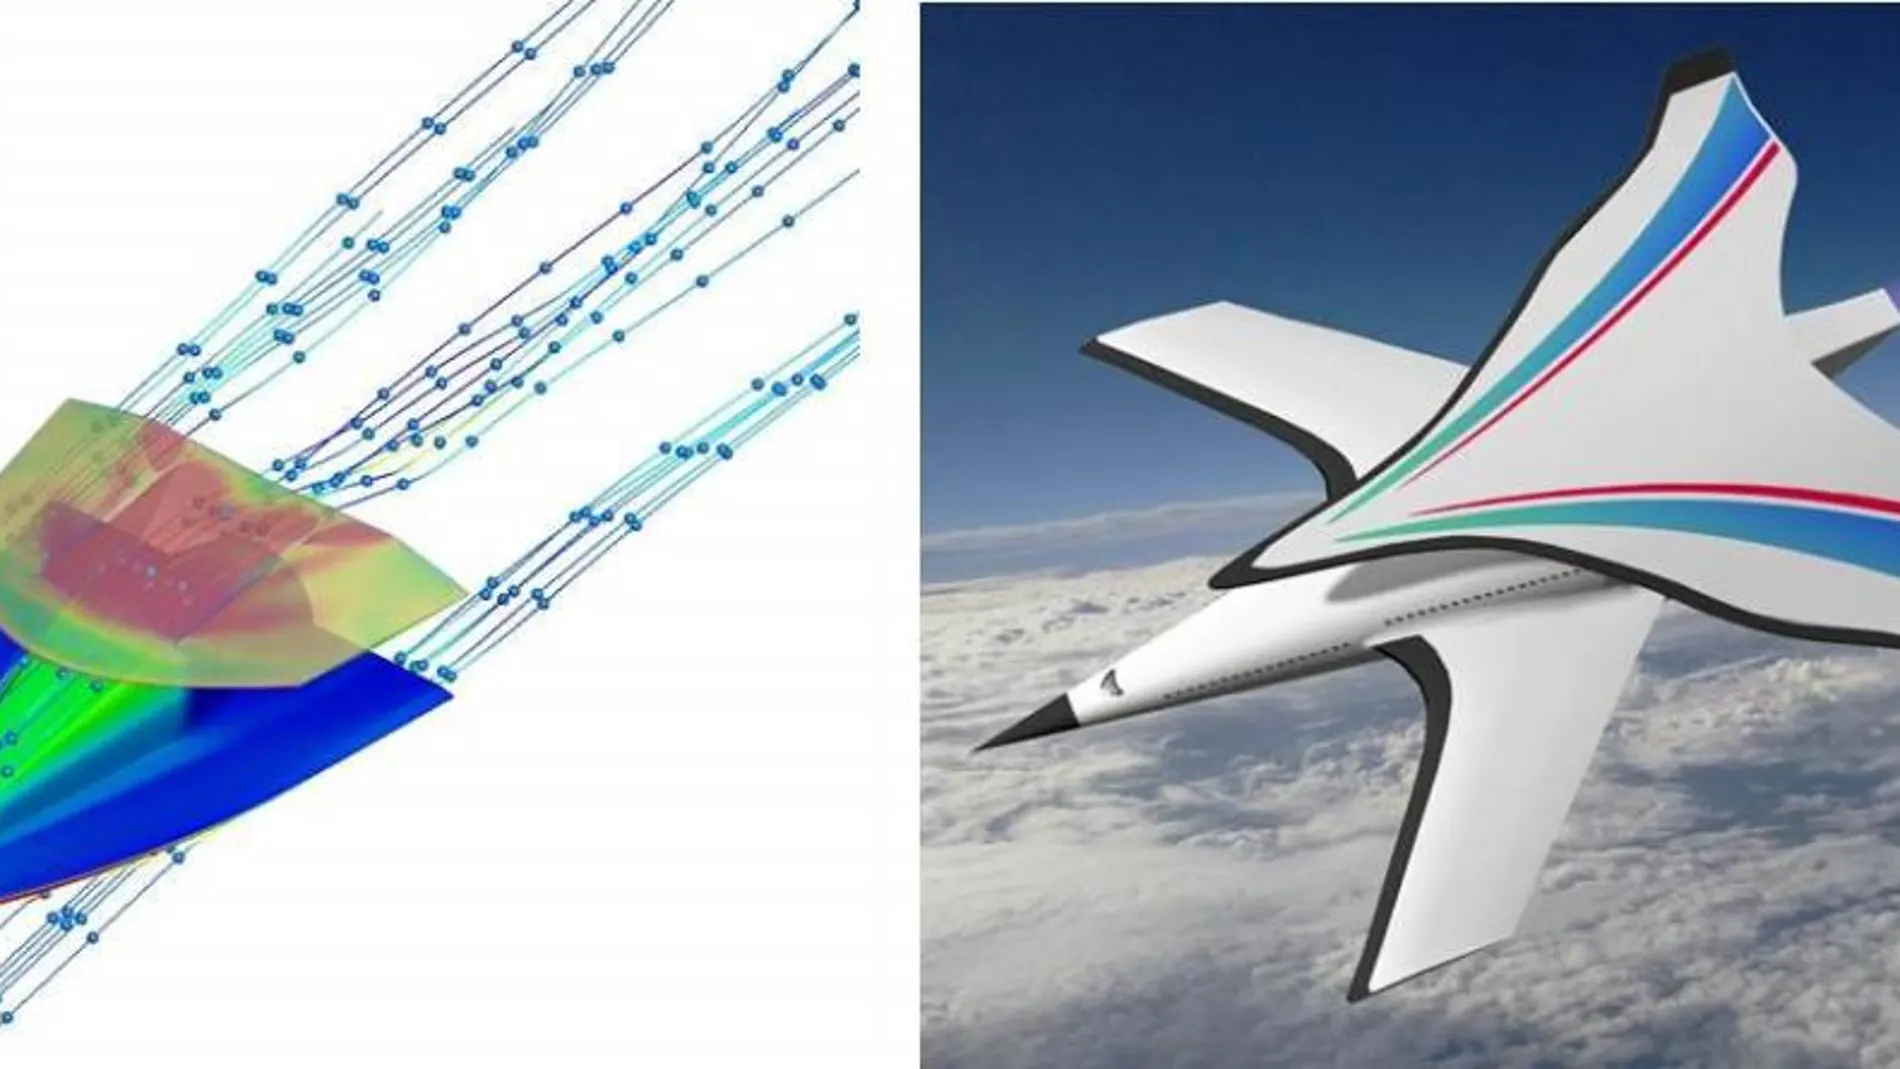 Diseño del I-plane